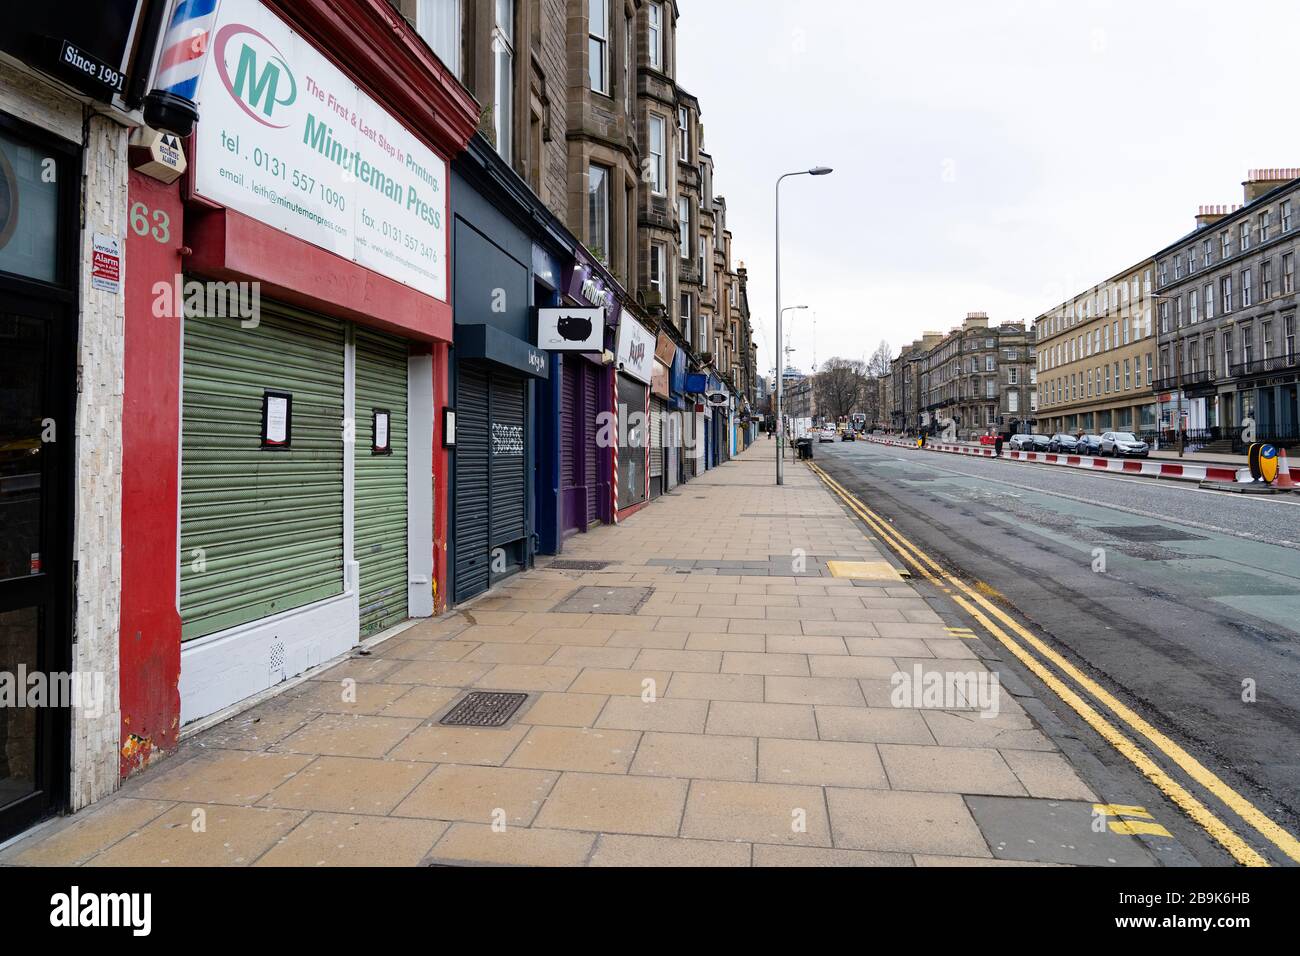 Édimbourg, Écosse, Royaume-Uni. 24 mars 2020. Rues désertes le long de Leith Walk. Tous les magasins et restaurants sont fermés avec très peu de personnes s'aventurant à l'extérieur après le maintien imposé par le gouvernement aujourd'hui. Iain Masterton/Alay Live News Banque D'Images